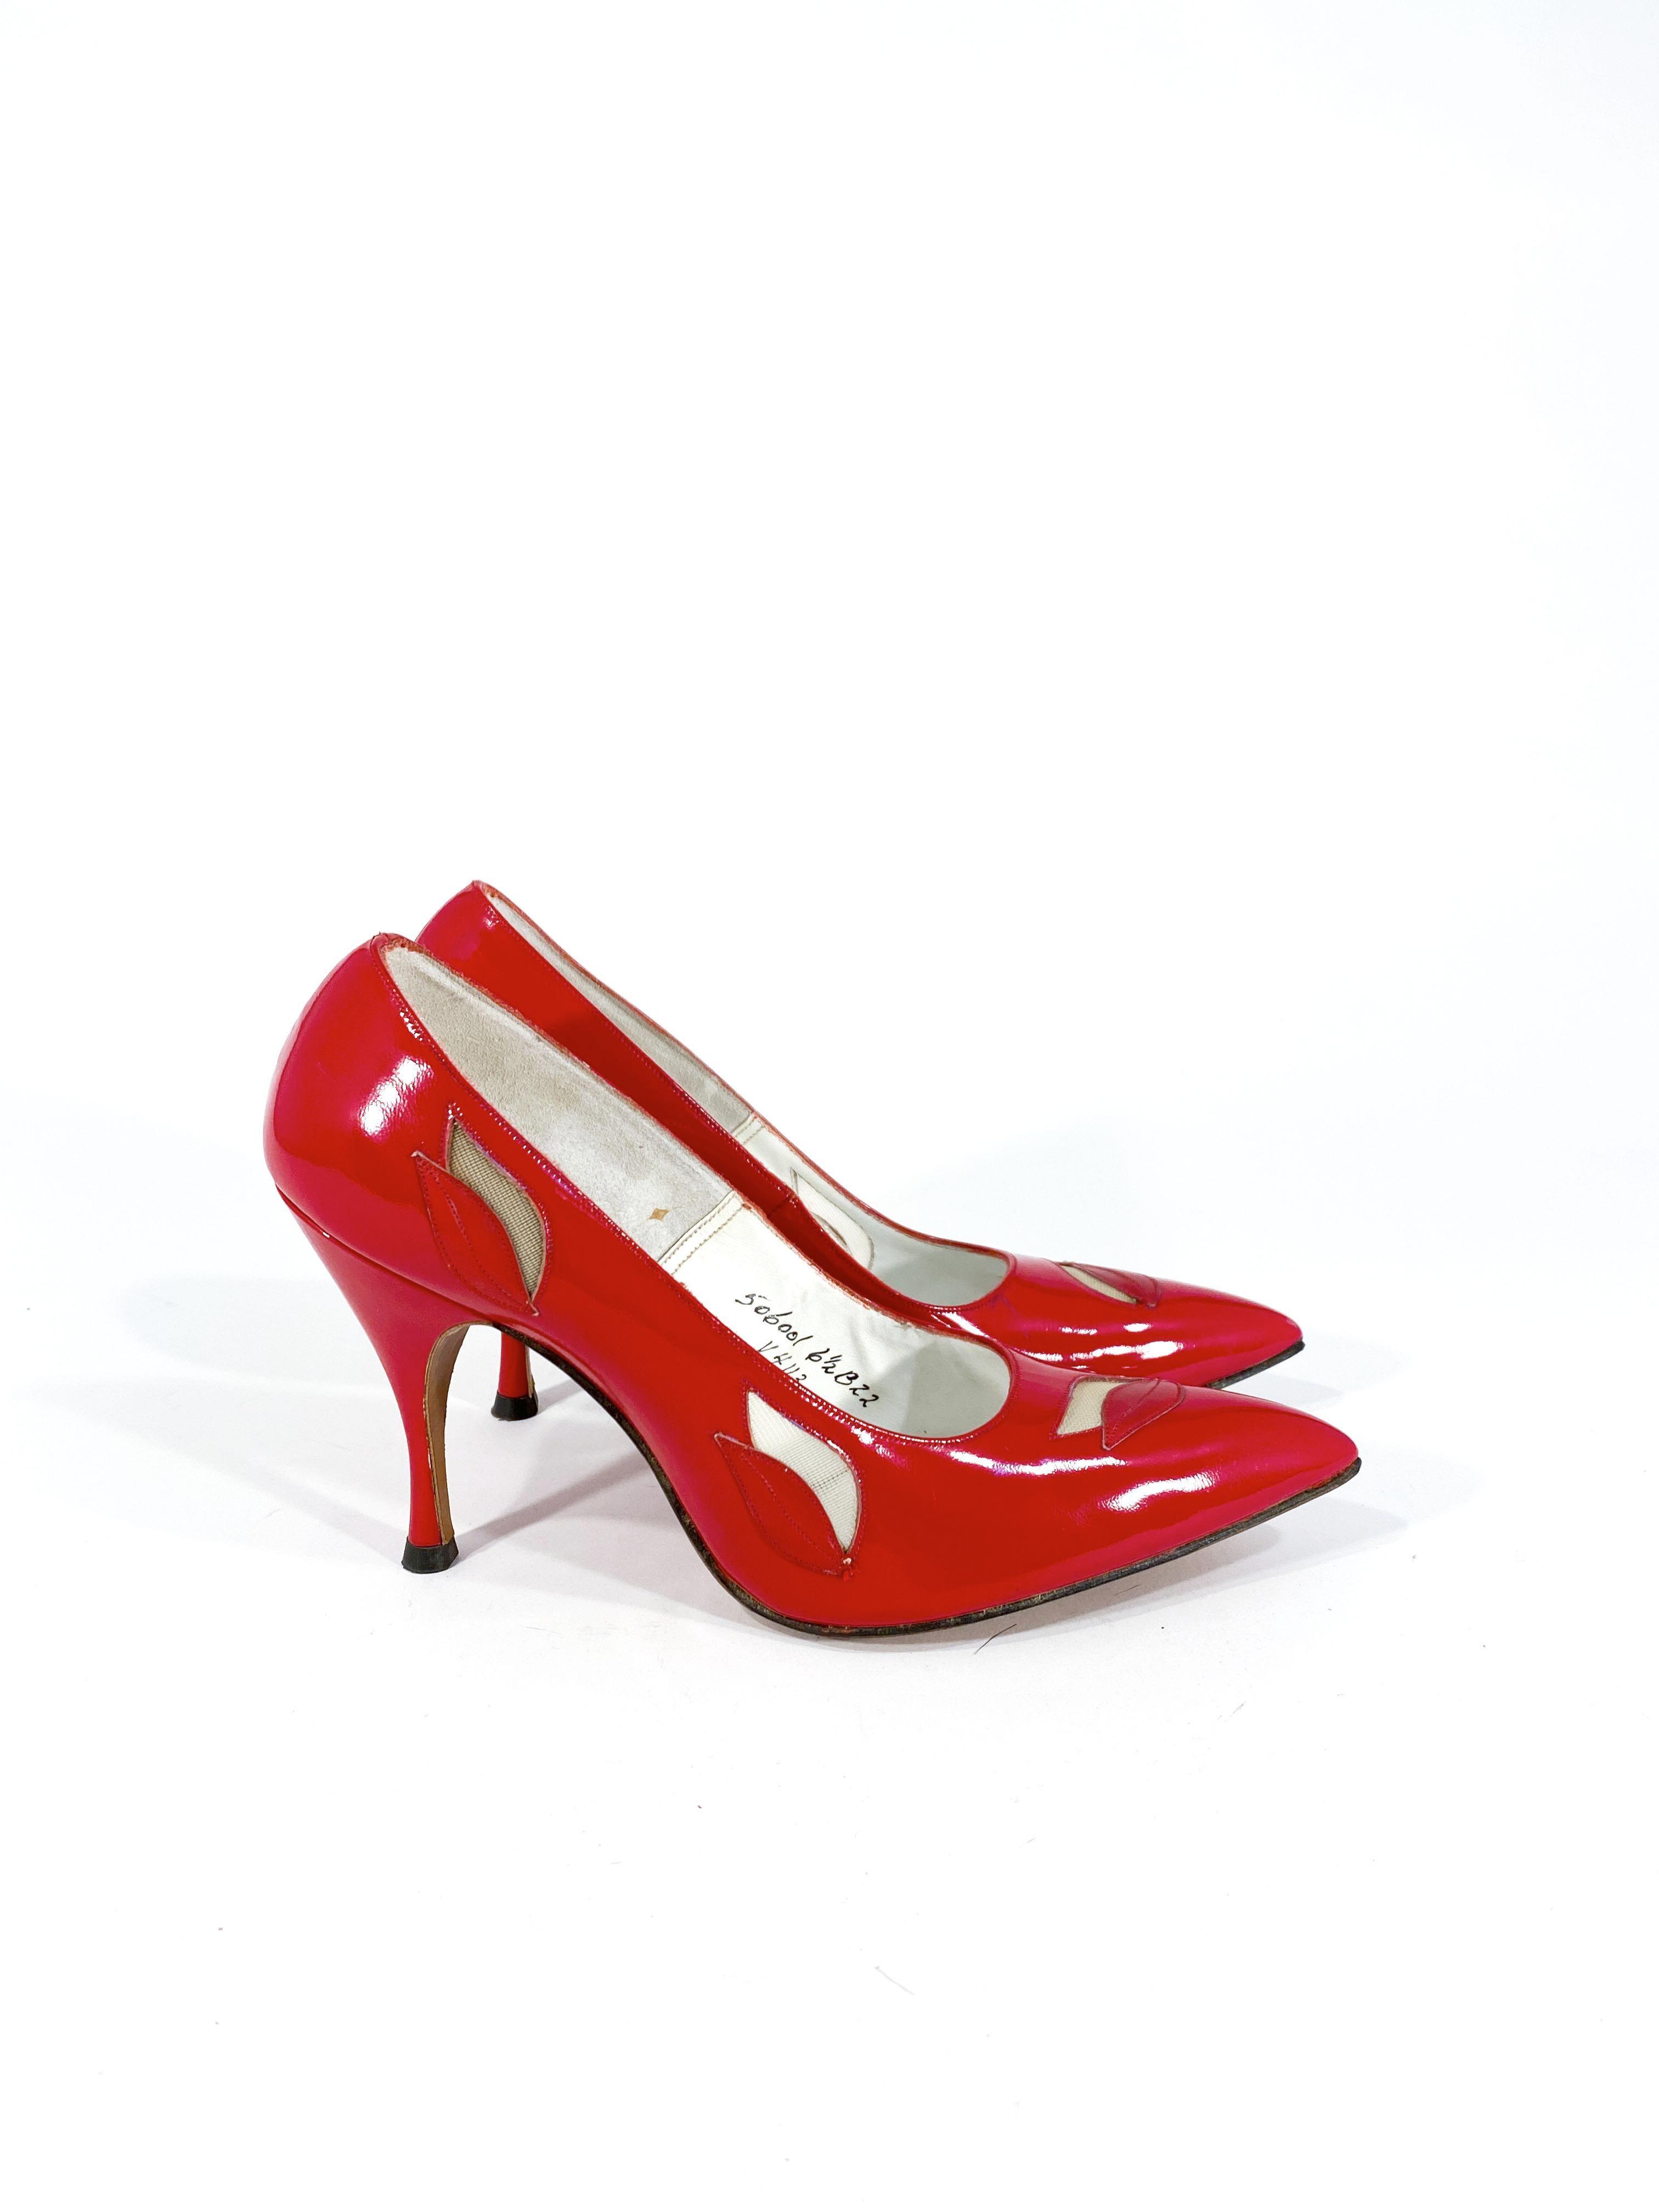 1960s high heels